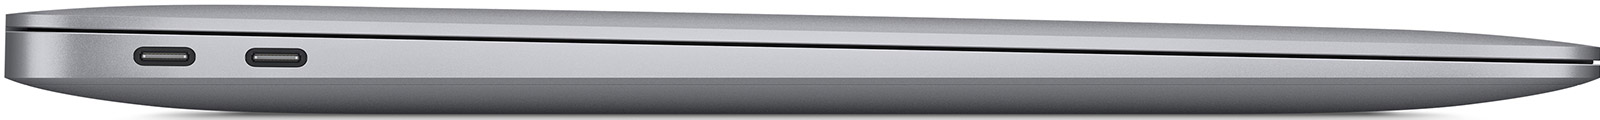 Apple-MacBook-Air-13-3-M1-8-Core-8-GB-2-TB-8-Core-Grafik-Space-Grau-CH-05.jpg